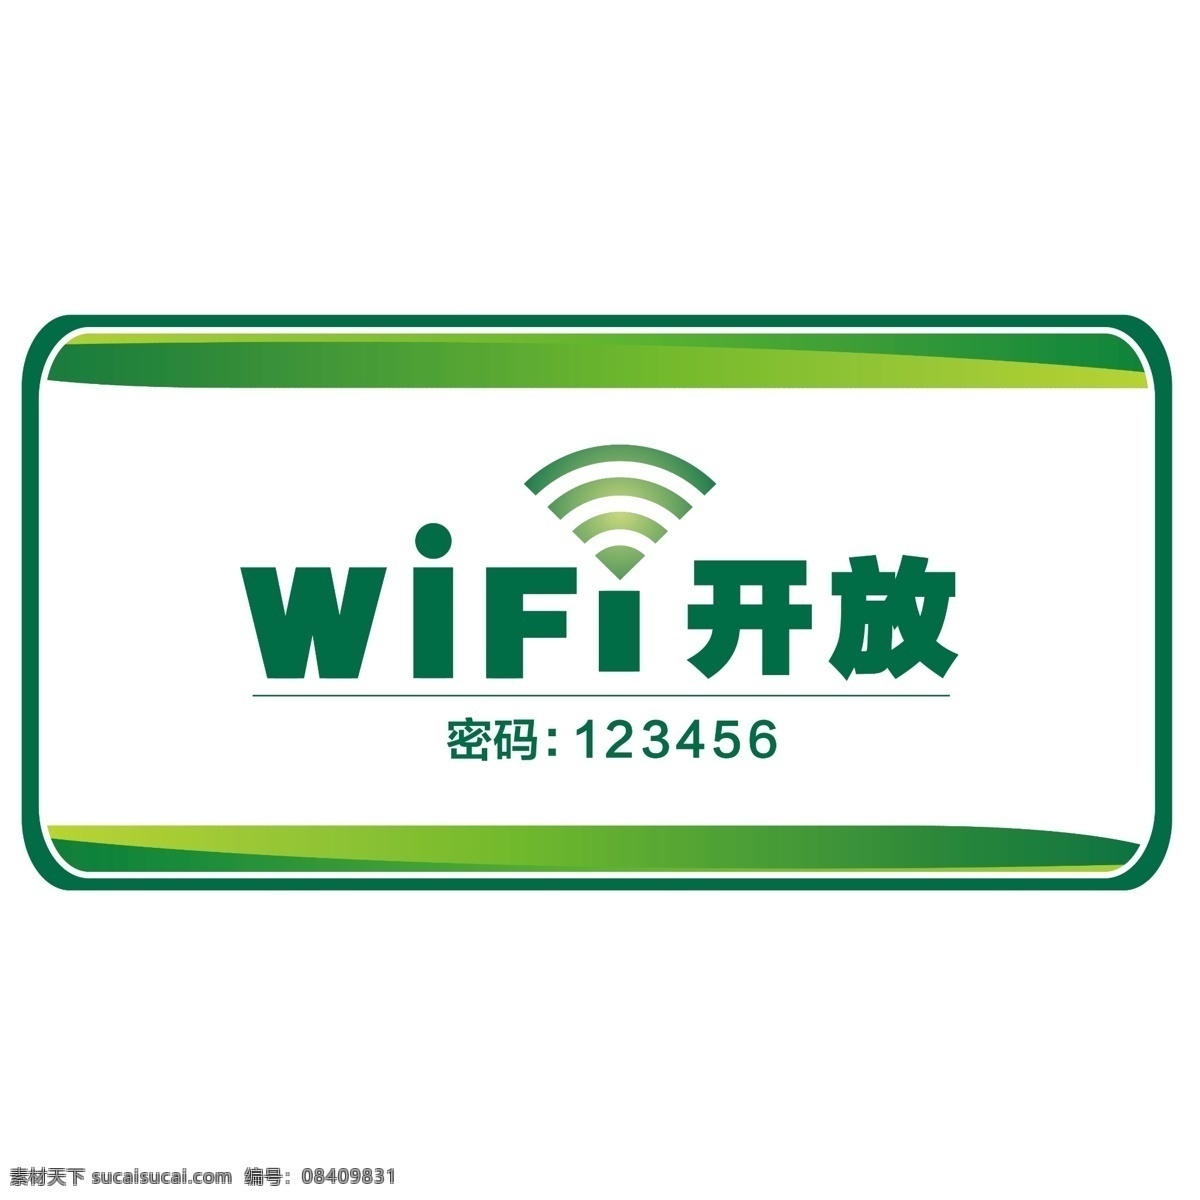 wifi 标志 免费 图标 wifi图标 wifi标志 免费wifi wifi开放 开放